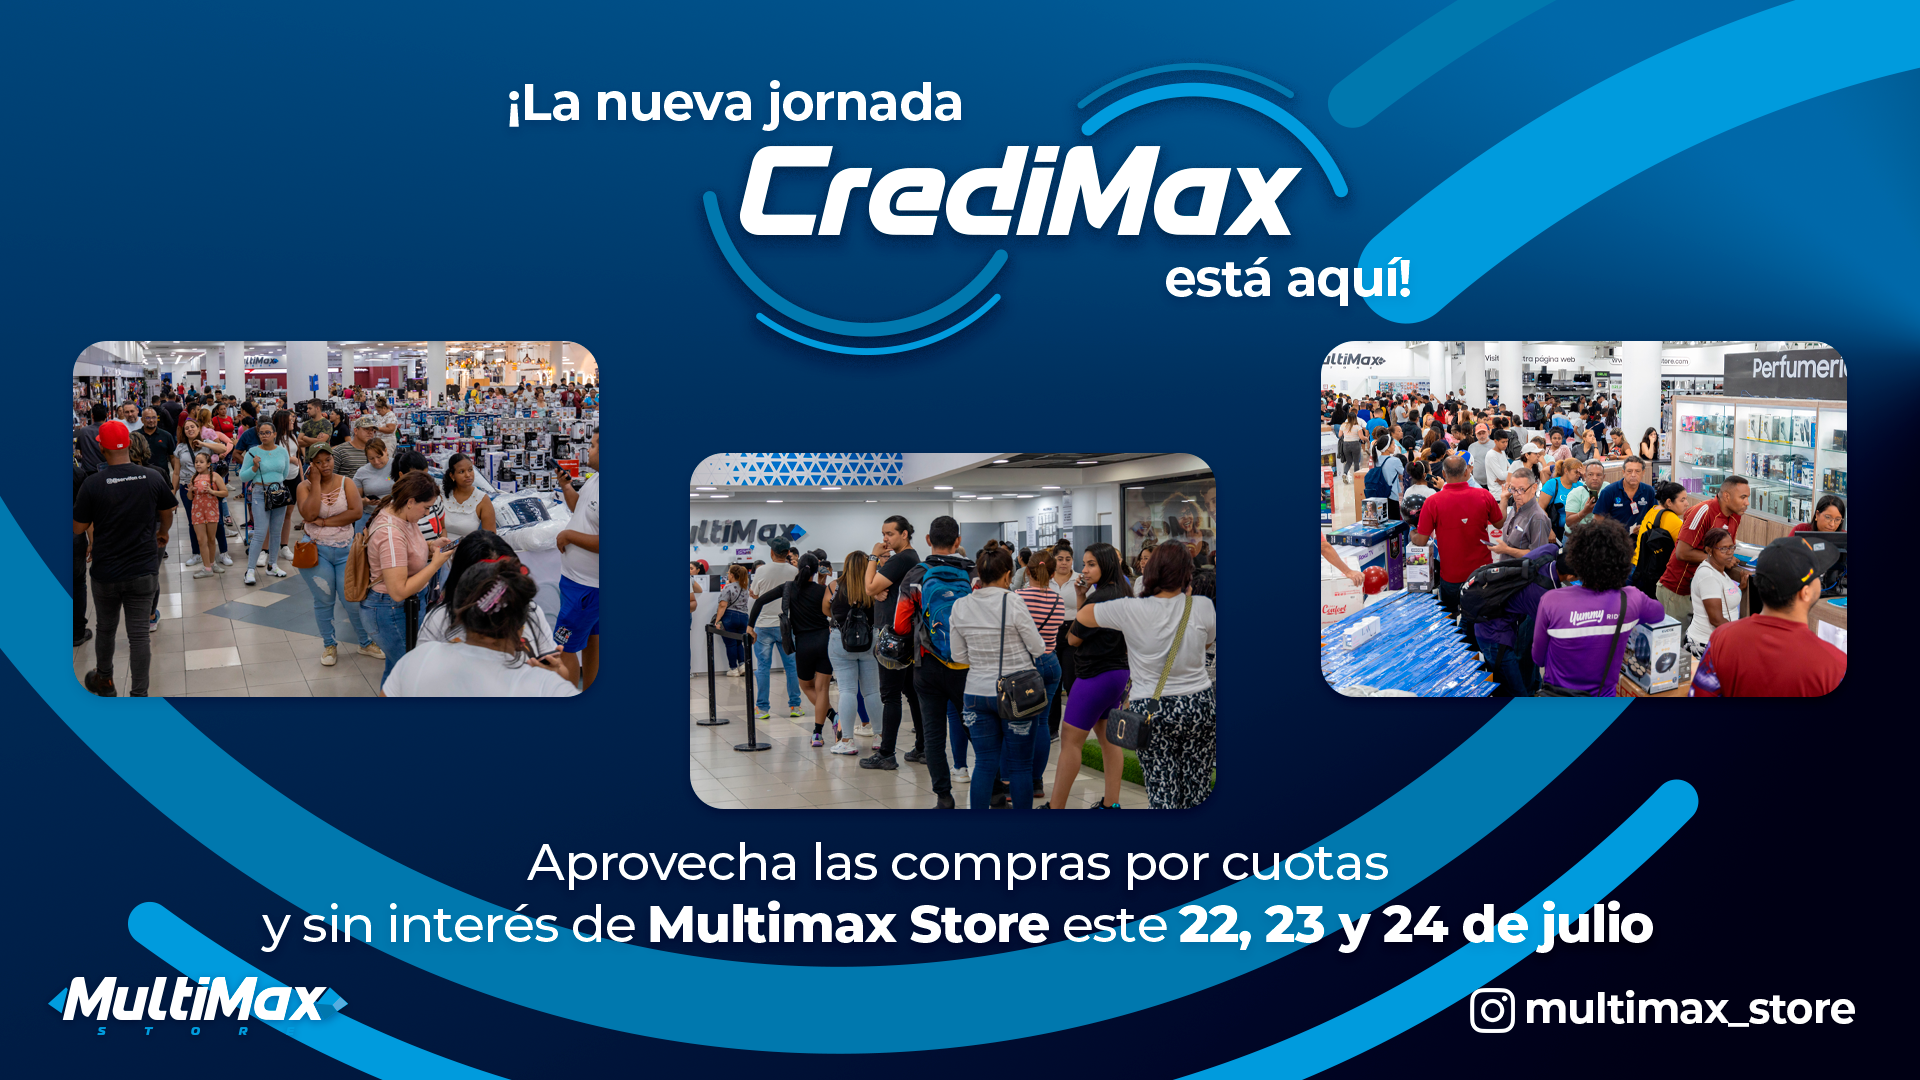 ¡La nueva jornada CrediMax está aquí! Aprovecha las compras por cuotas y sin interés de Multimax Store este 22, 23 y 24 de julio